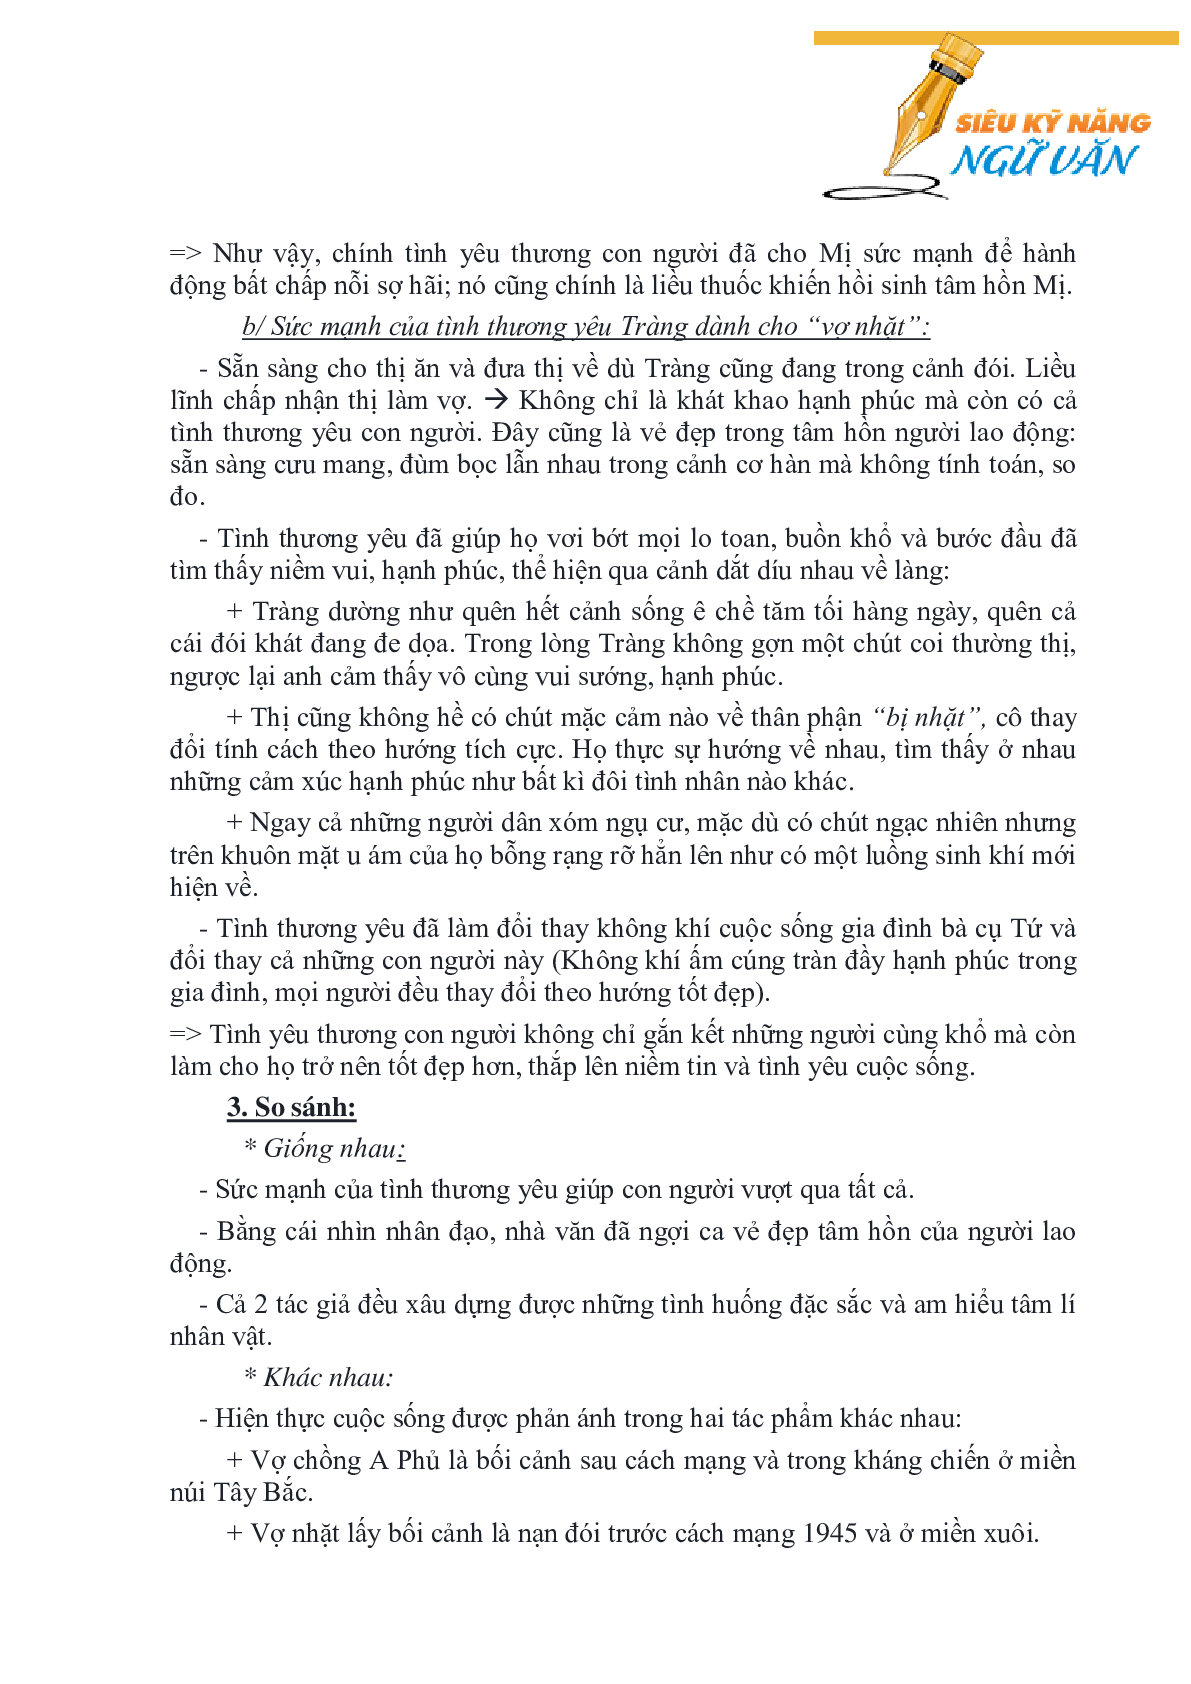 MỘT SỐ ĐỀ NGHỊ LUẬN SO SÁNH VĂN HỌC LỚP 12 HAY NHẤT (trang 6)